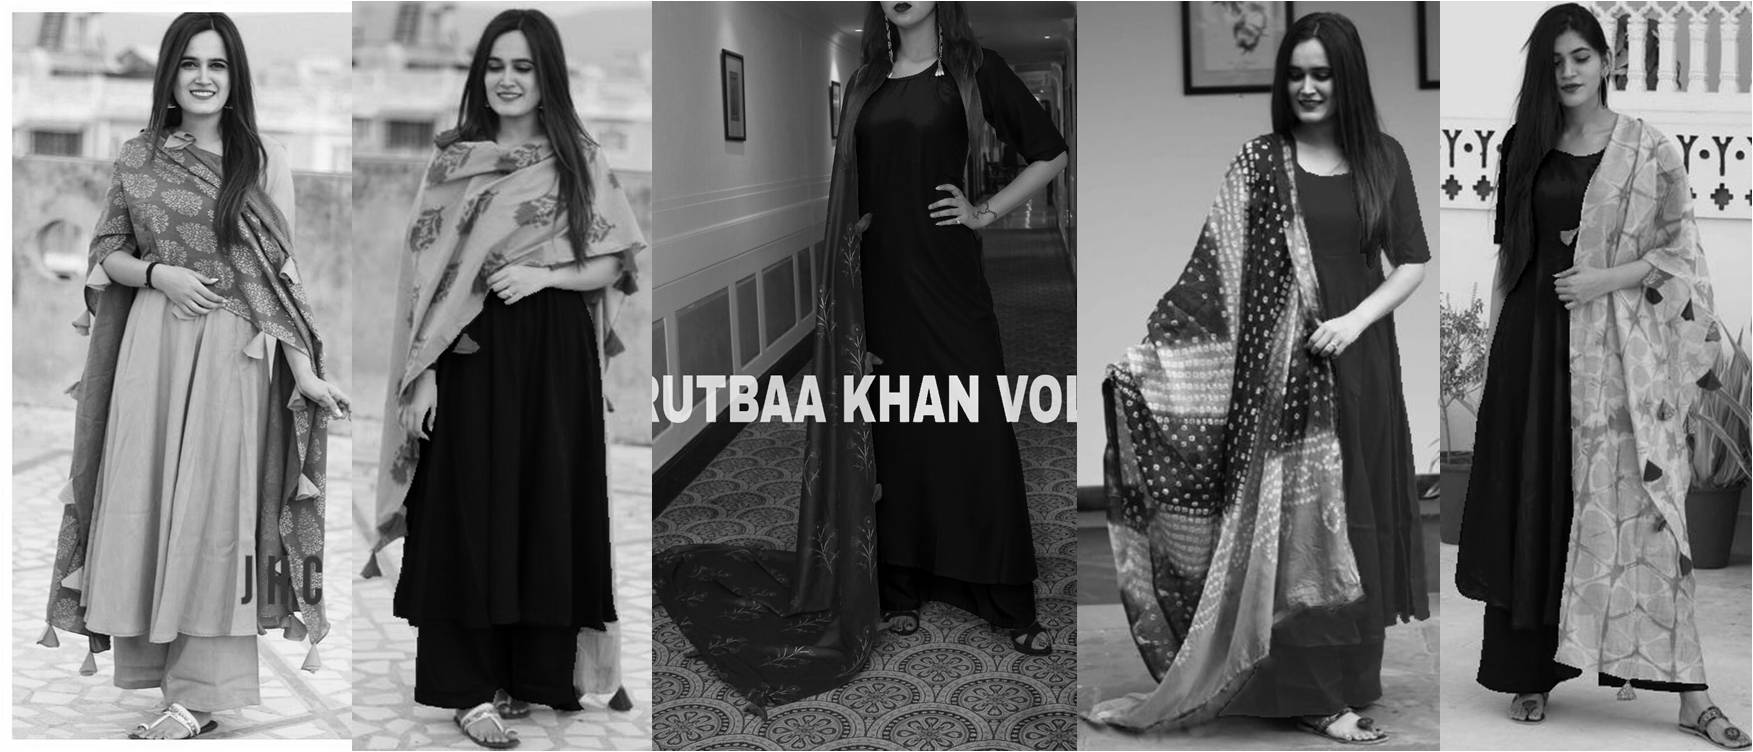 Rutbaa Khan Palazoo Suits